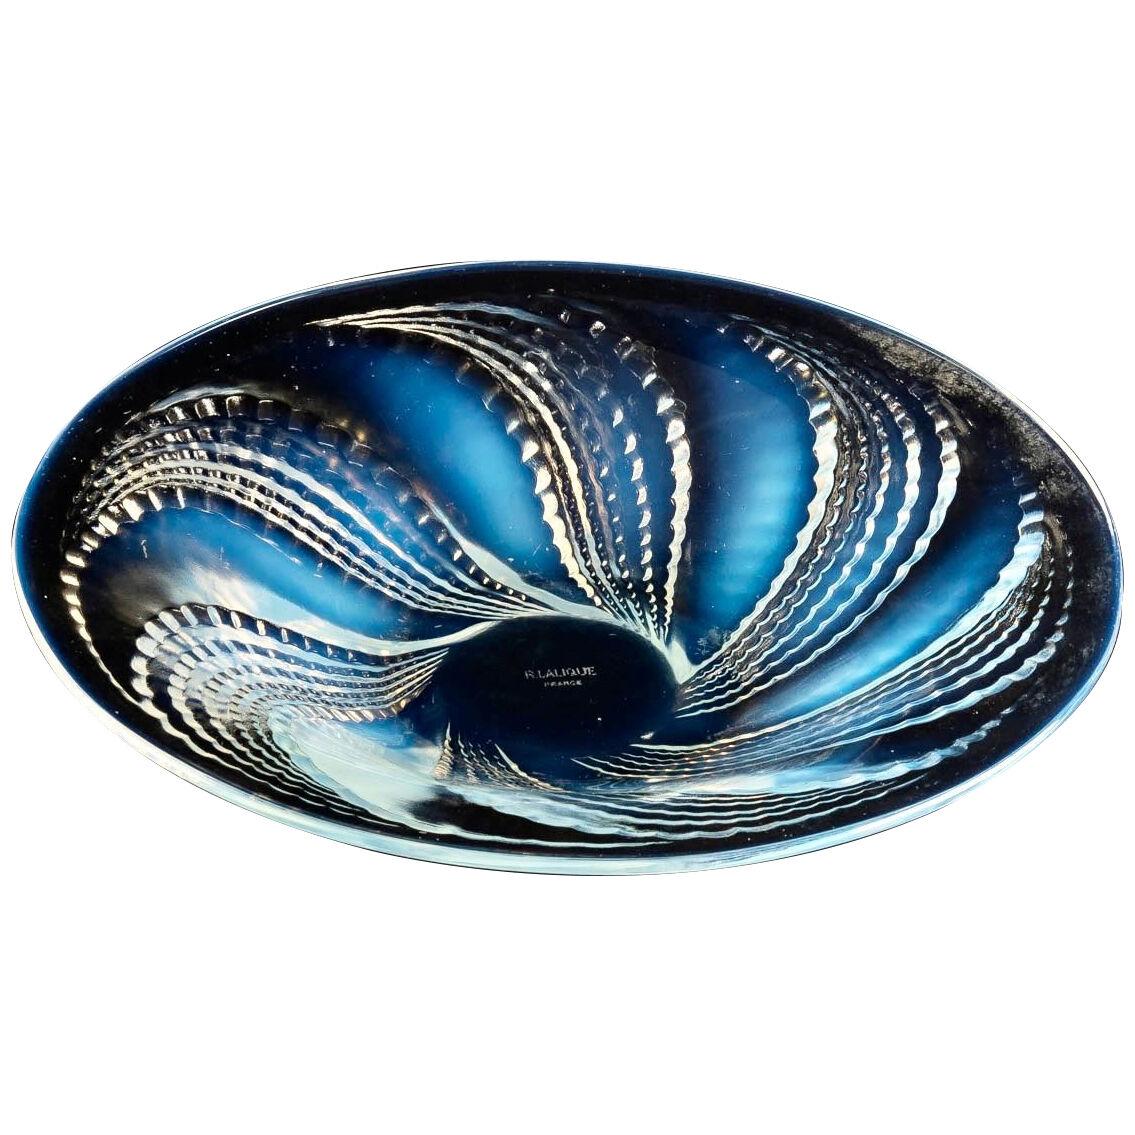 1935 René Lalique - Bowl Fleuron Opalescent Glass